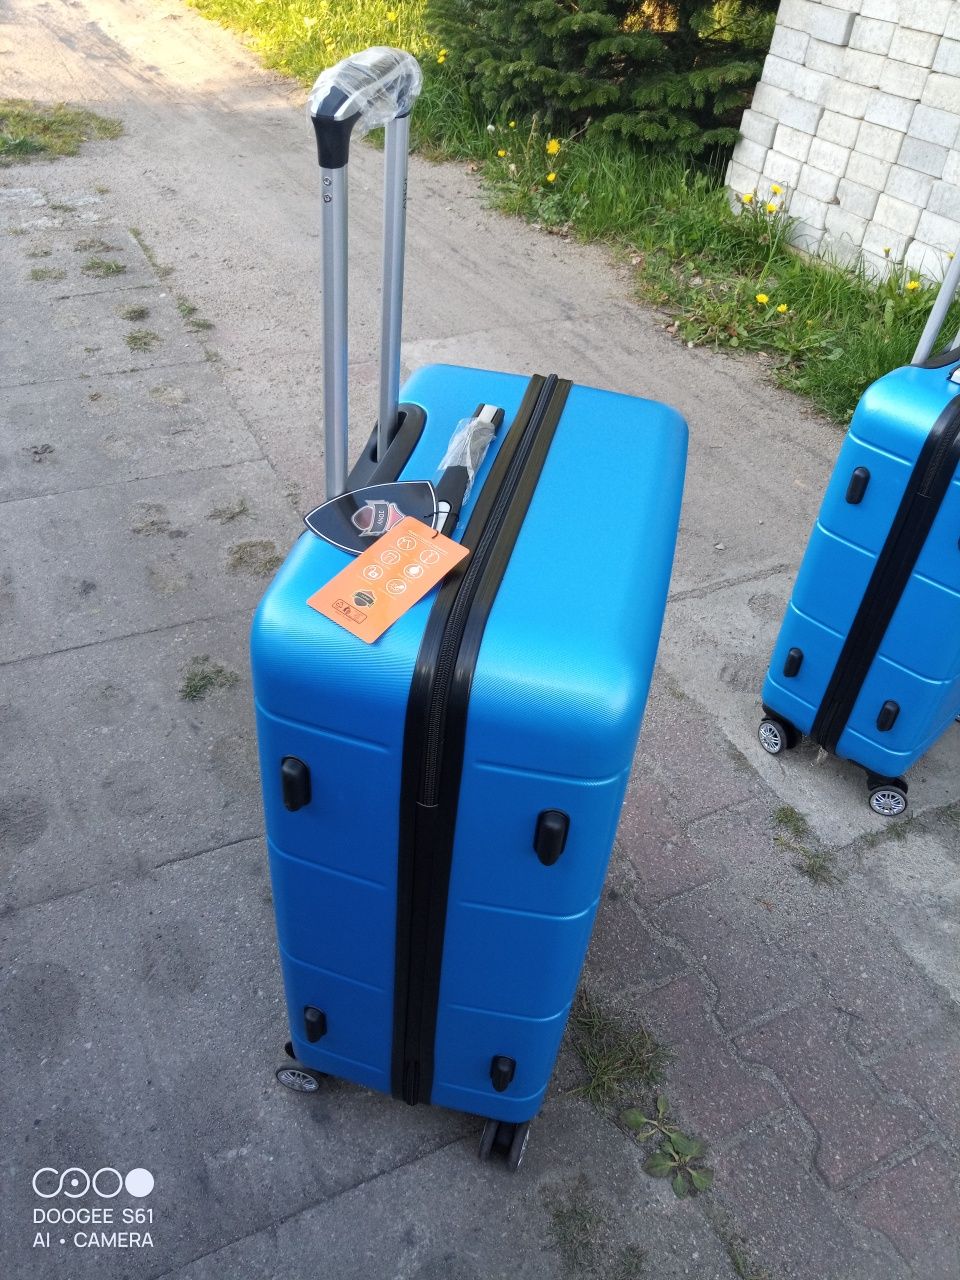 Nowa duża walizka podróżna ABS na czterech kółkach obracanych 360 st